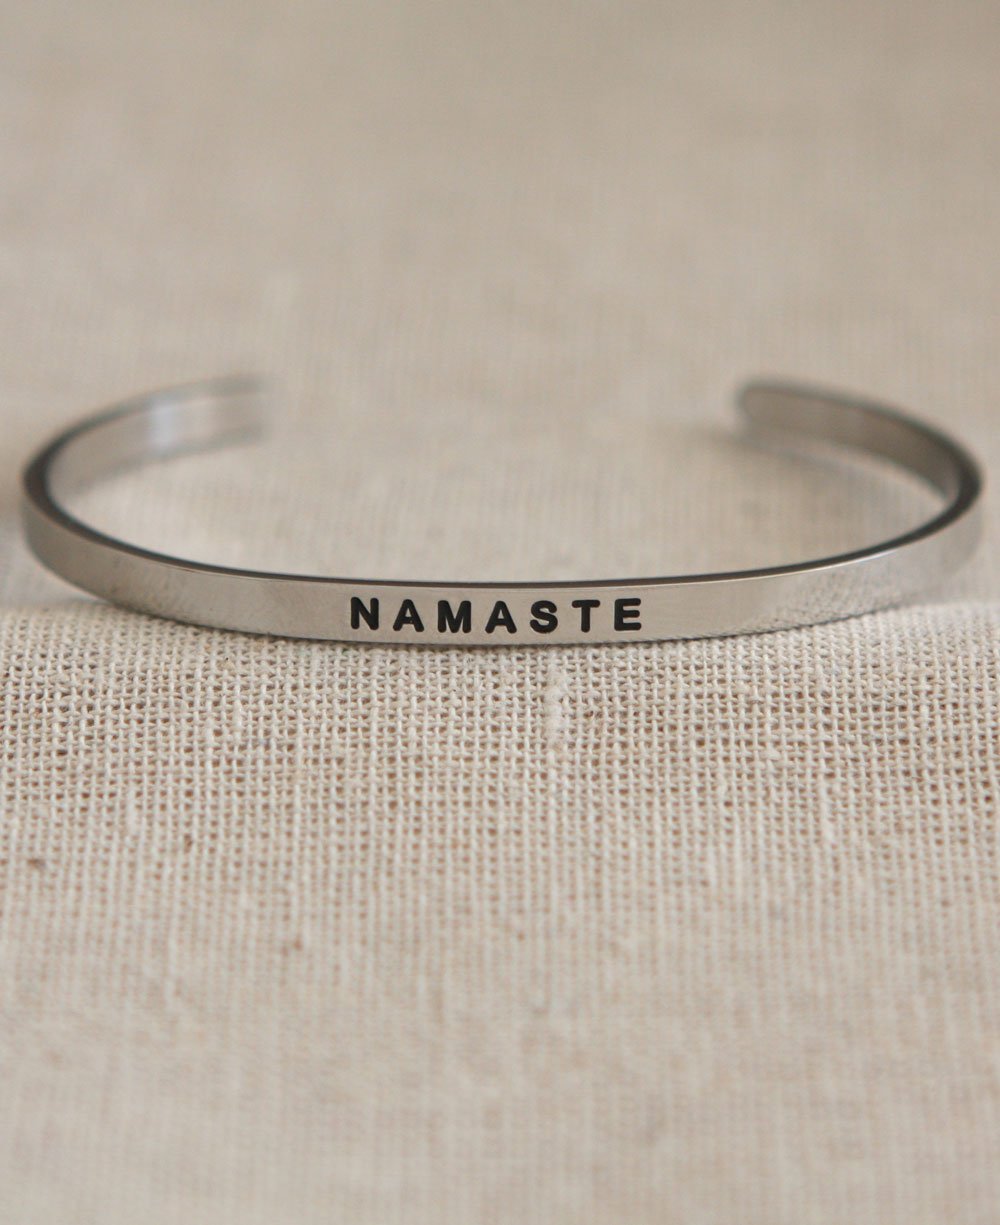 Engraved Namaste Cuff Bracelet - Bracelets